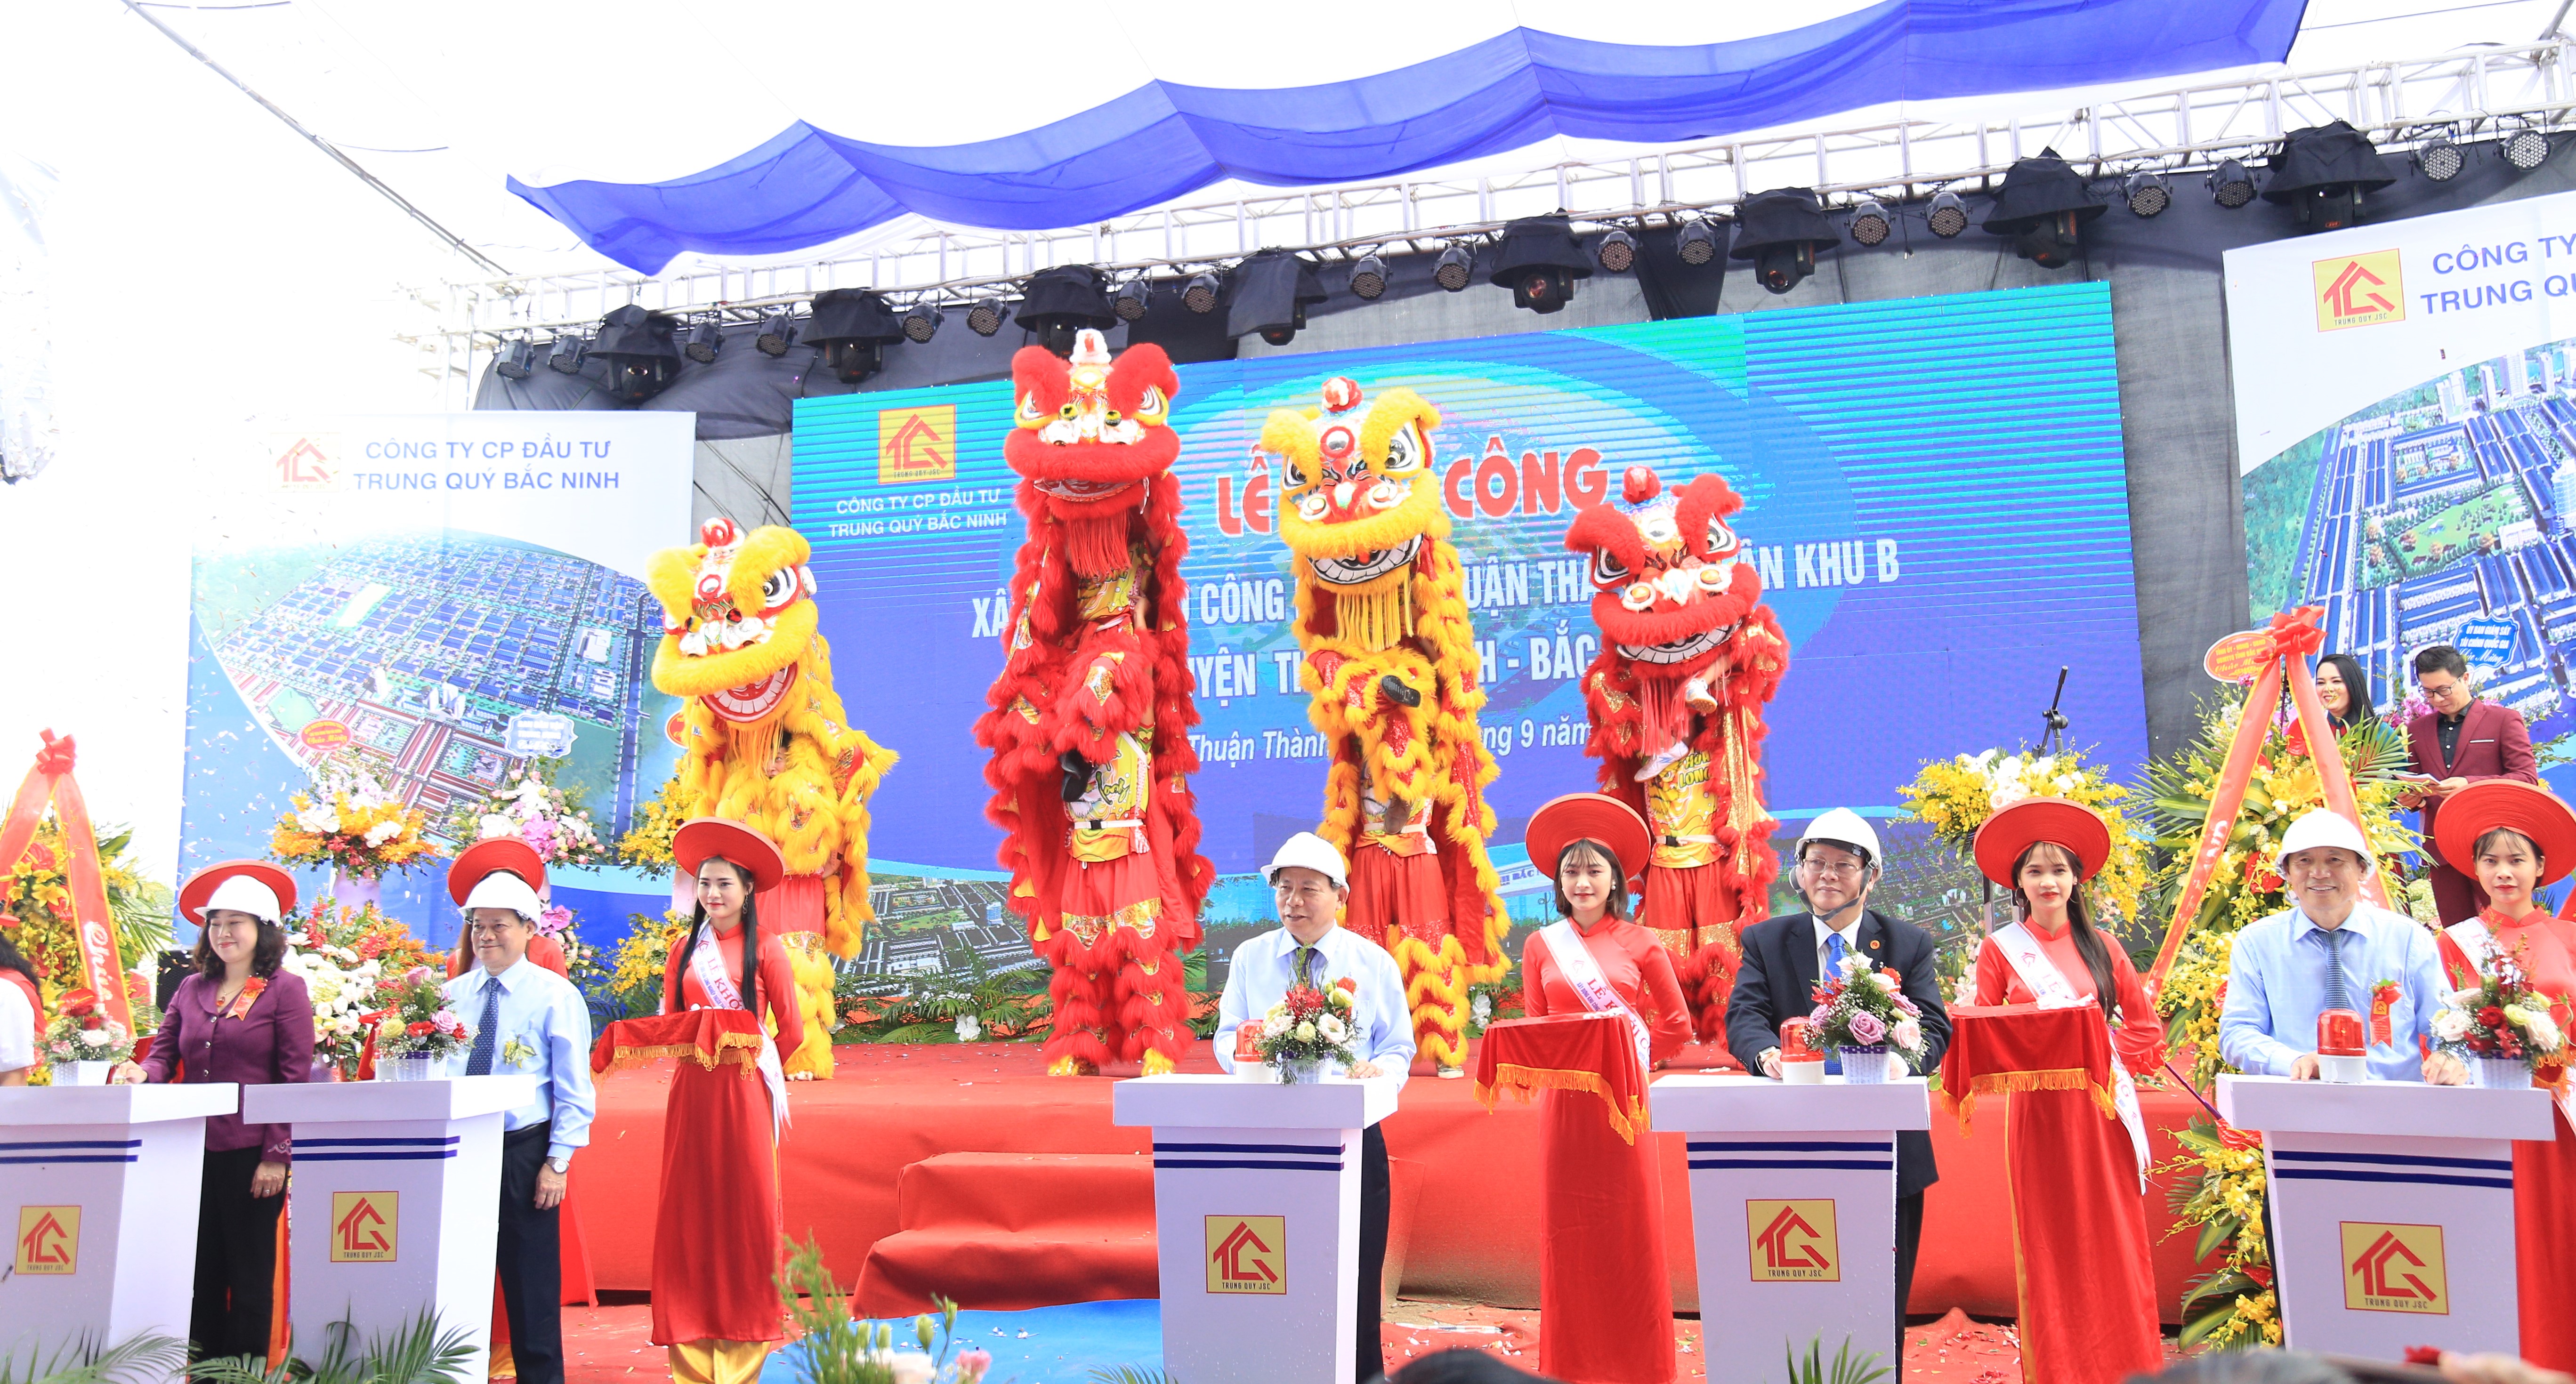 Hải Phát Land tham dự khởi công KCN Thuận Thành III  Phân khu B